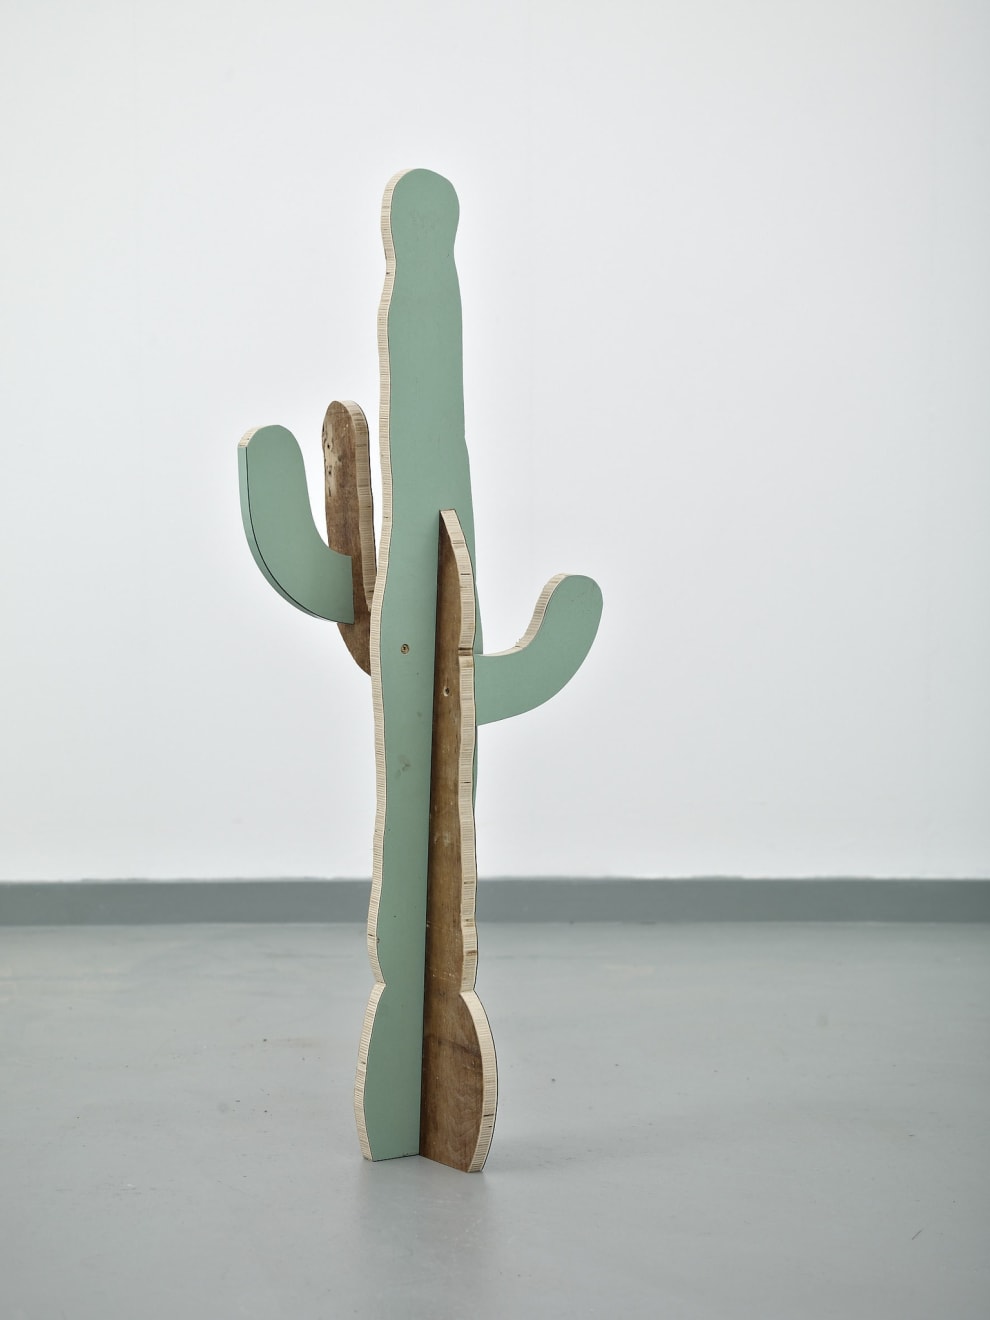 Paul Merrick, Cactus (Saguaro), 2014